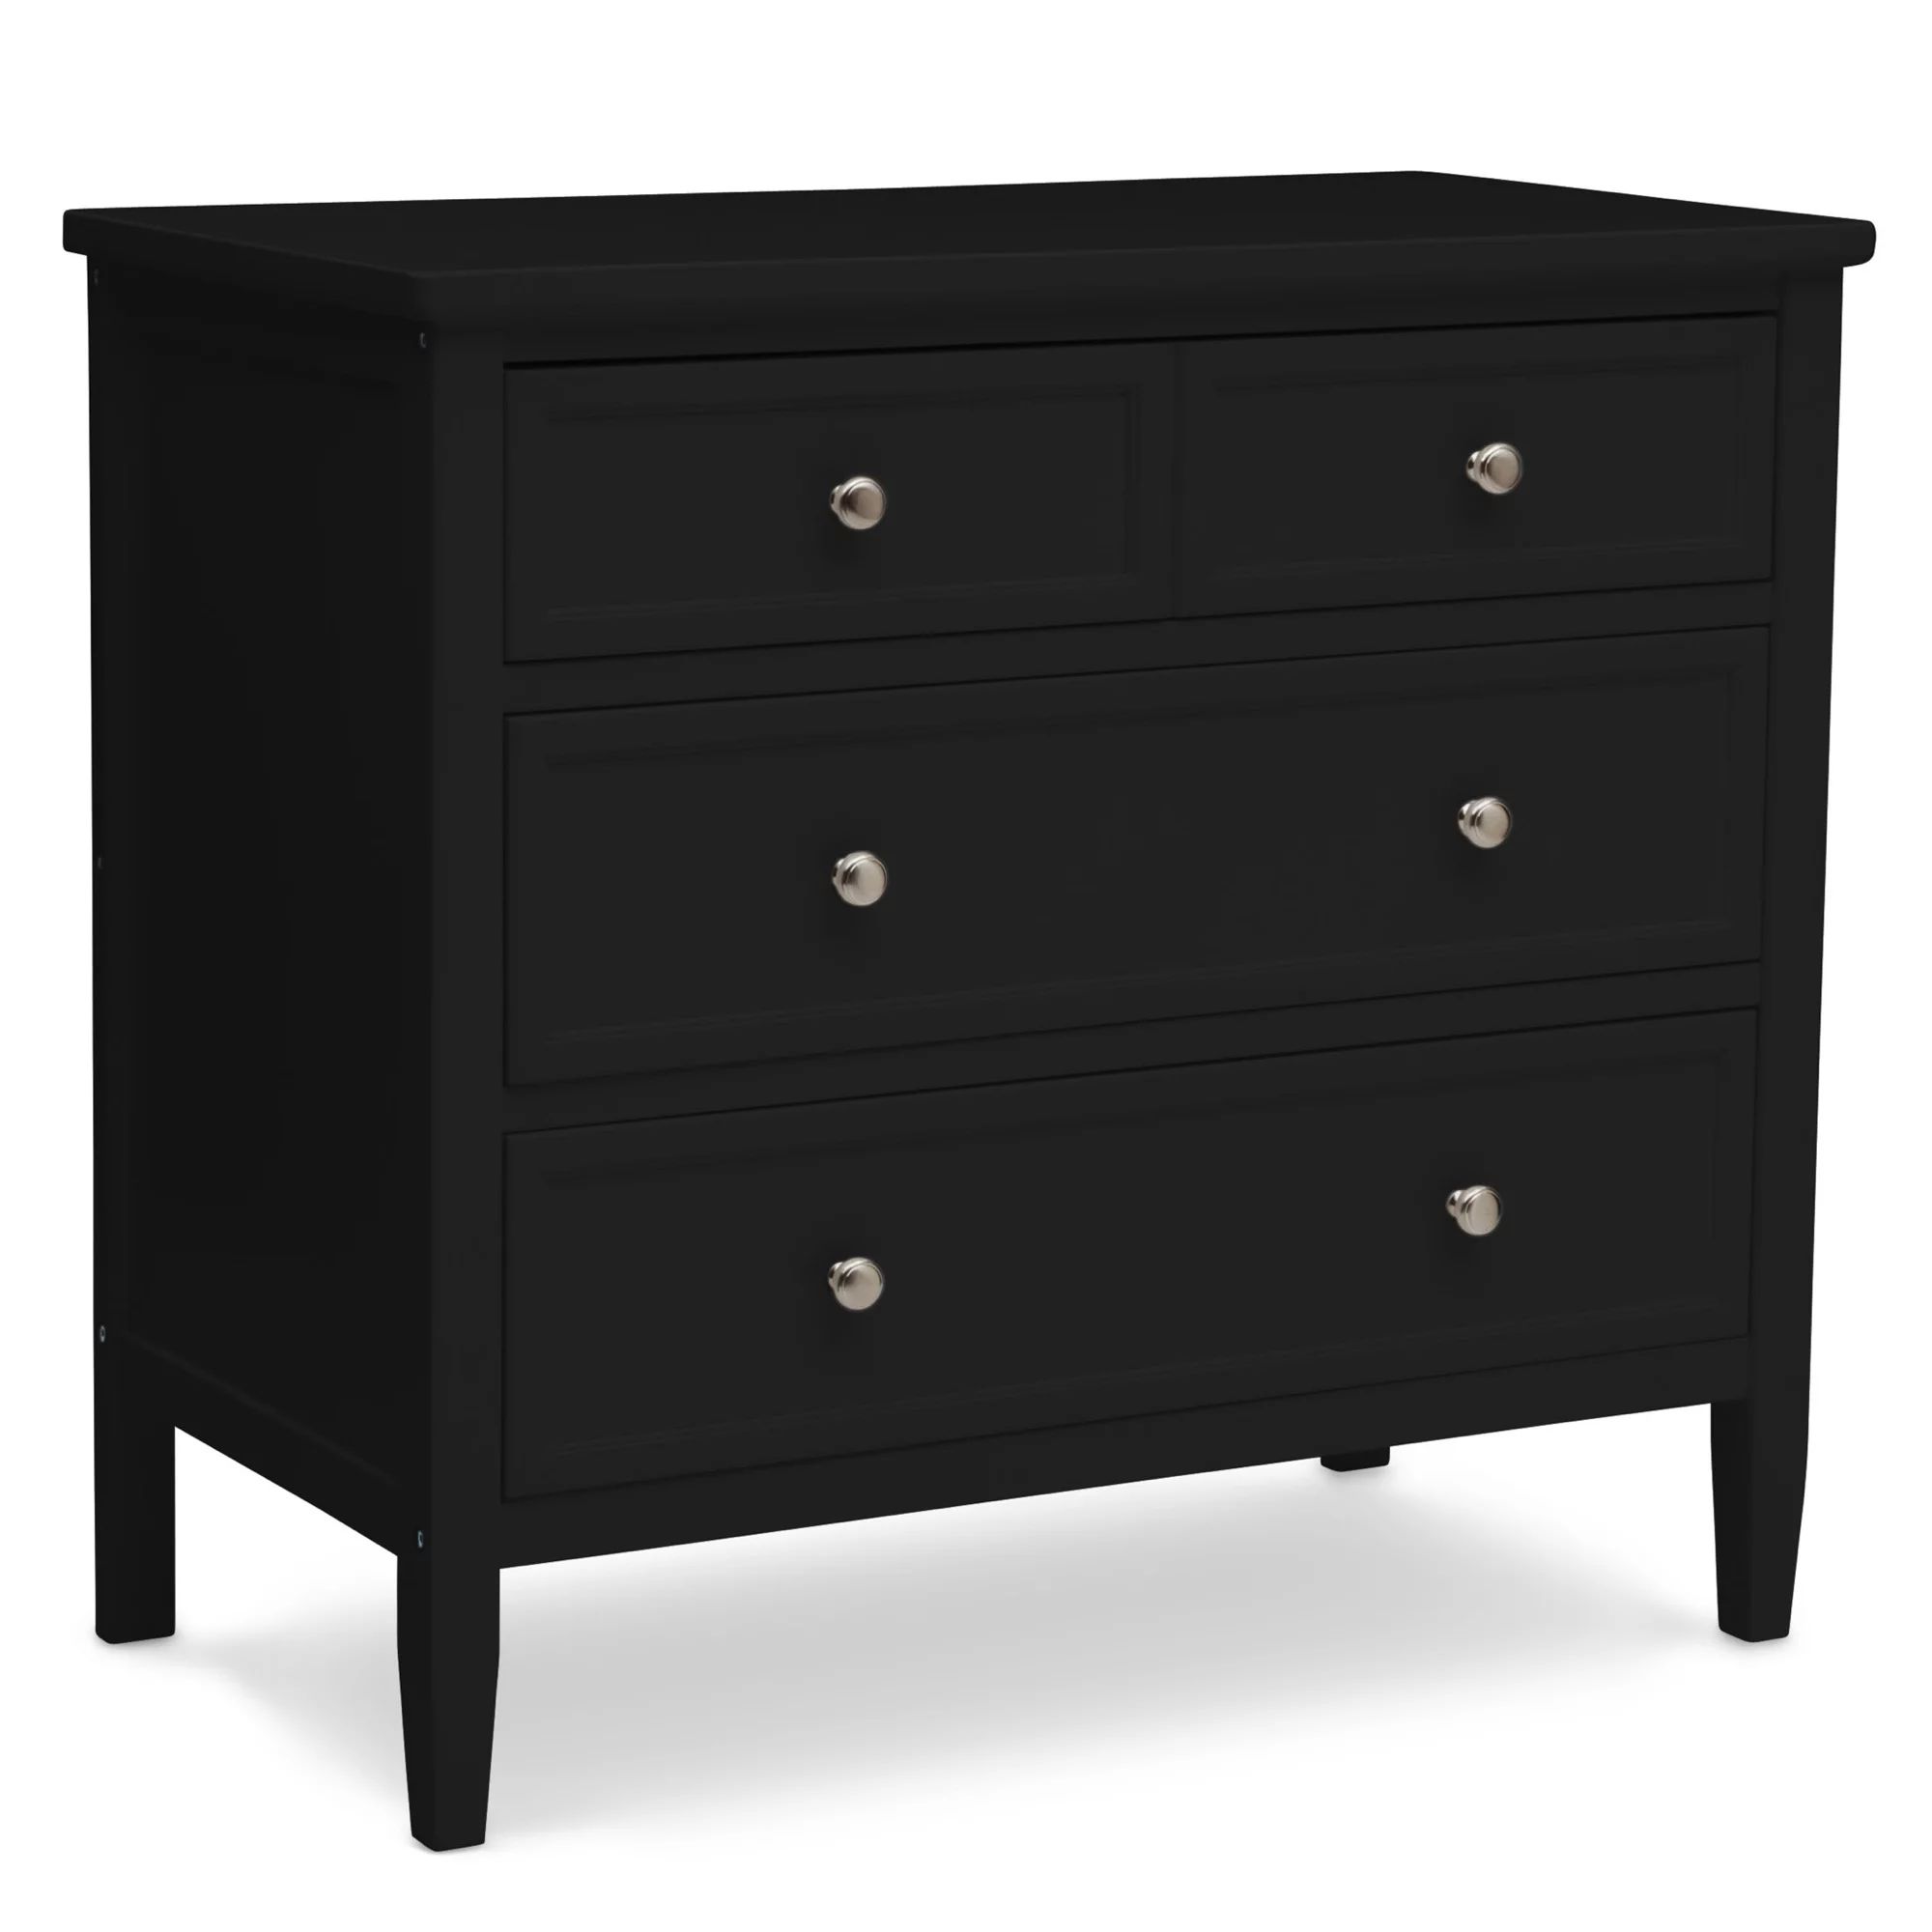 Delta Children Epic 3 Drawer Dresser with Interlocking Drawers - Greenguard Gold Certified, Black... | Walmart (US)